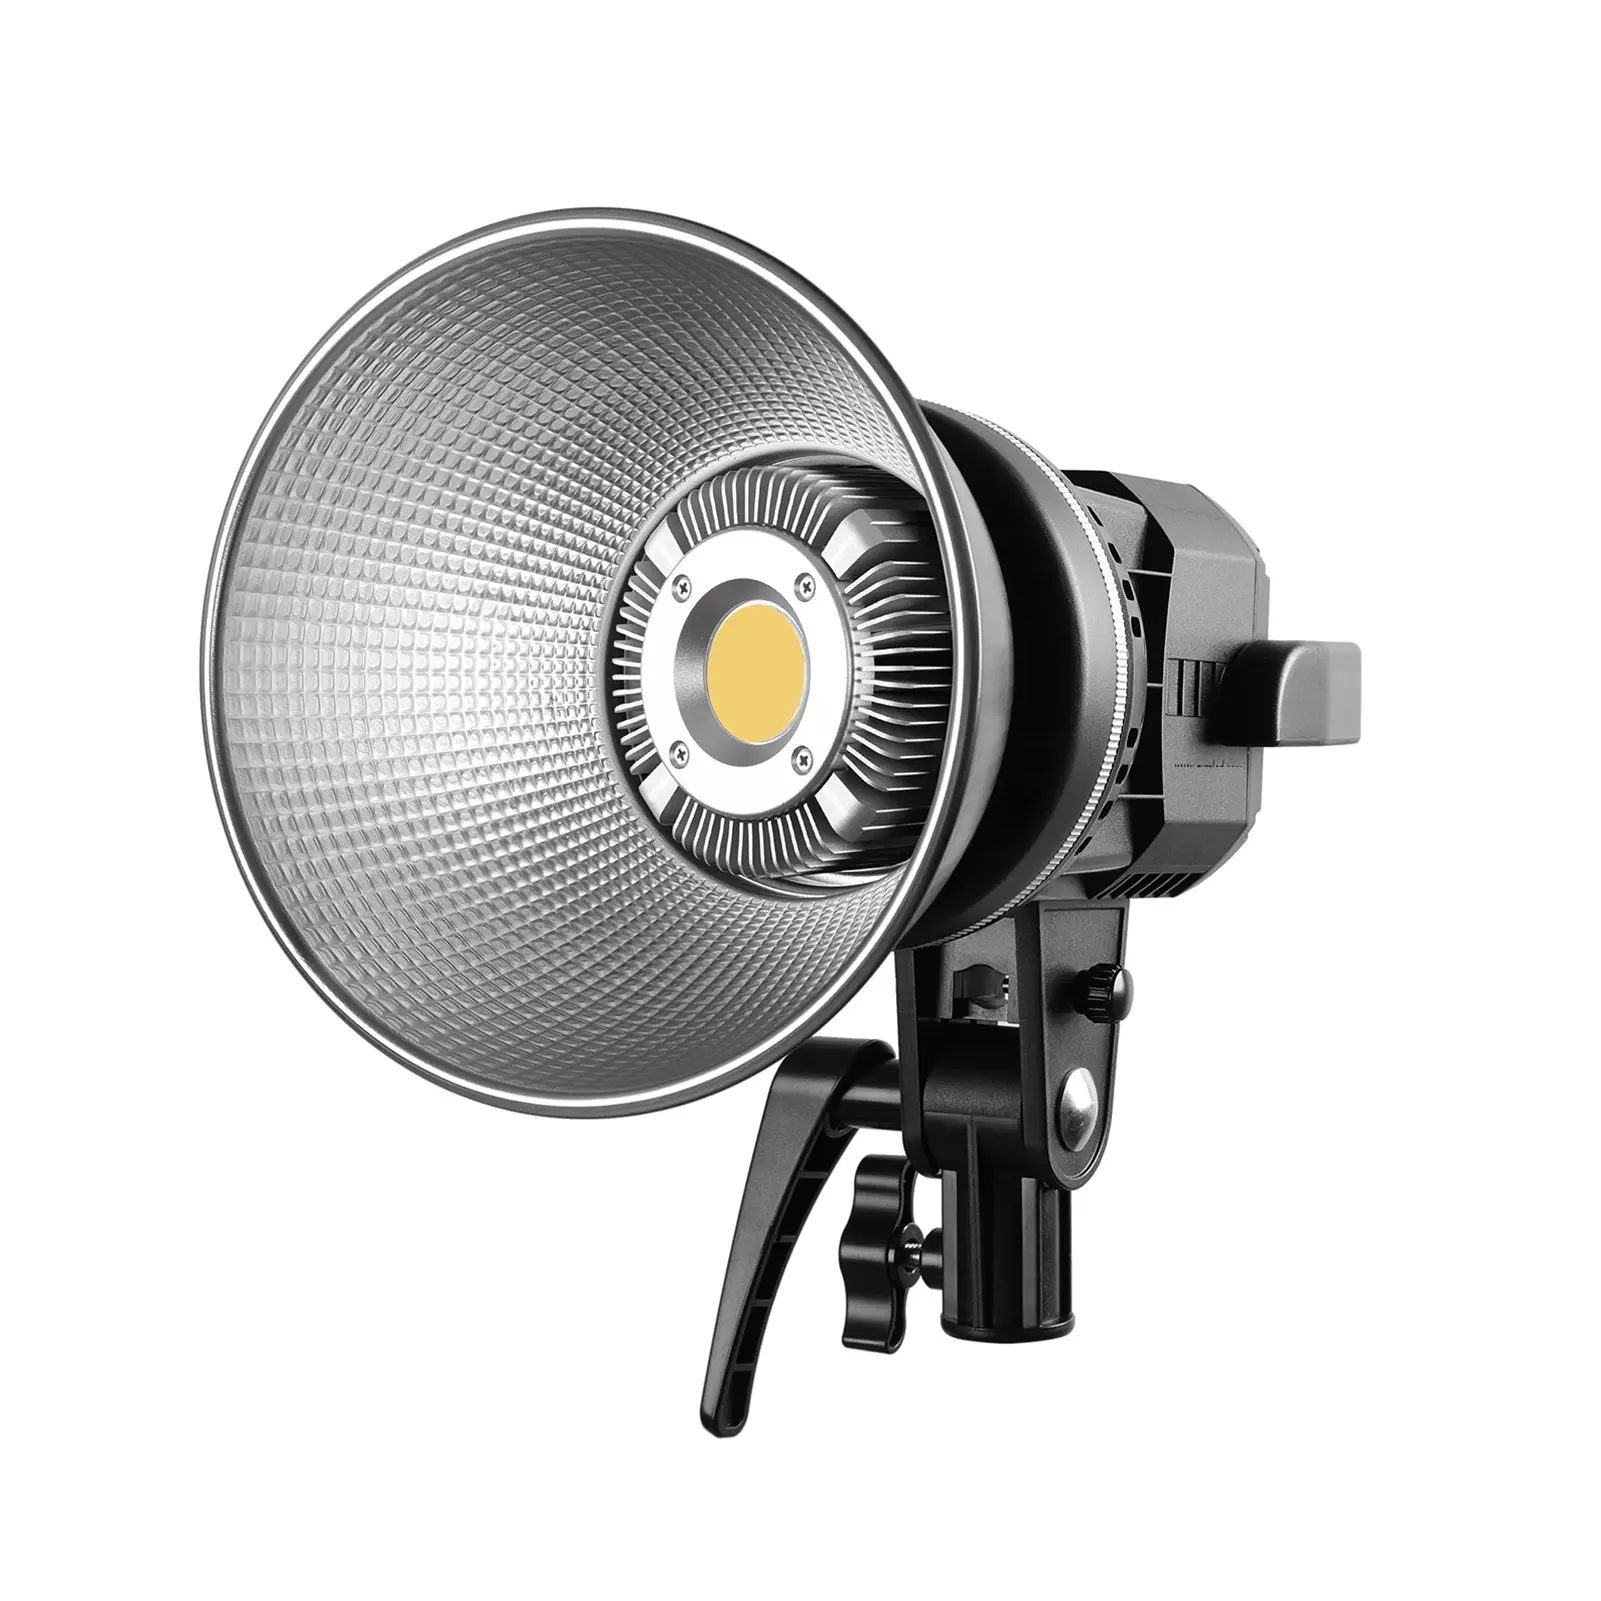 جديد P80S 80W فريسنل ضوء 5600K LED الفيديو الضوئي ستبليس سطوع تعديل CRI 97 مع بوينس جبل للتصوير الفيديو